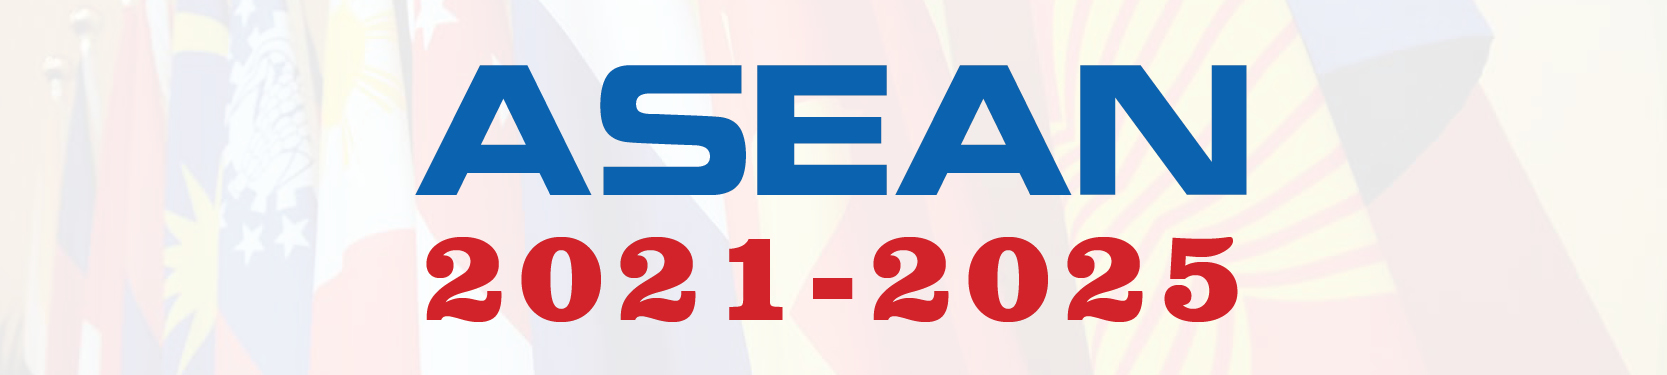 Chuyên đề ASEAN 2021-2025